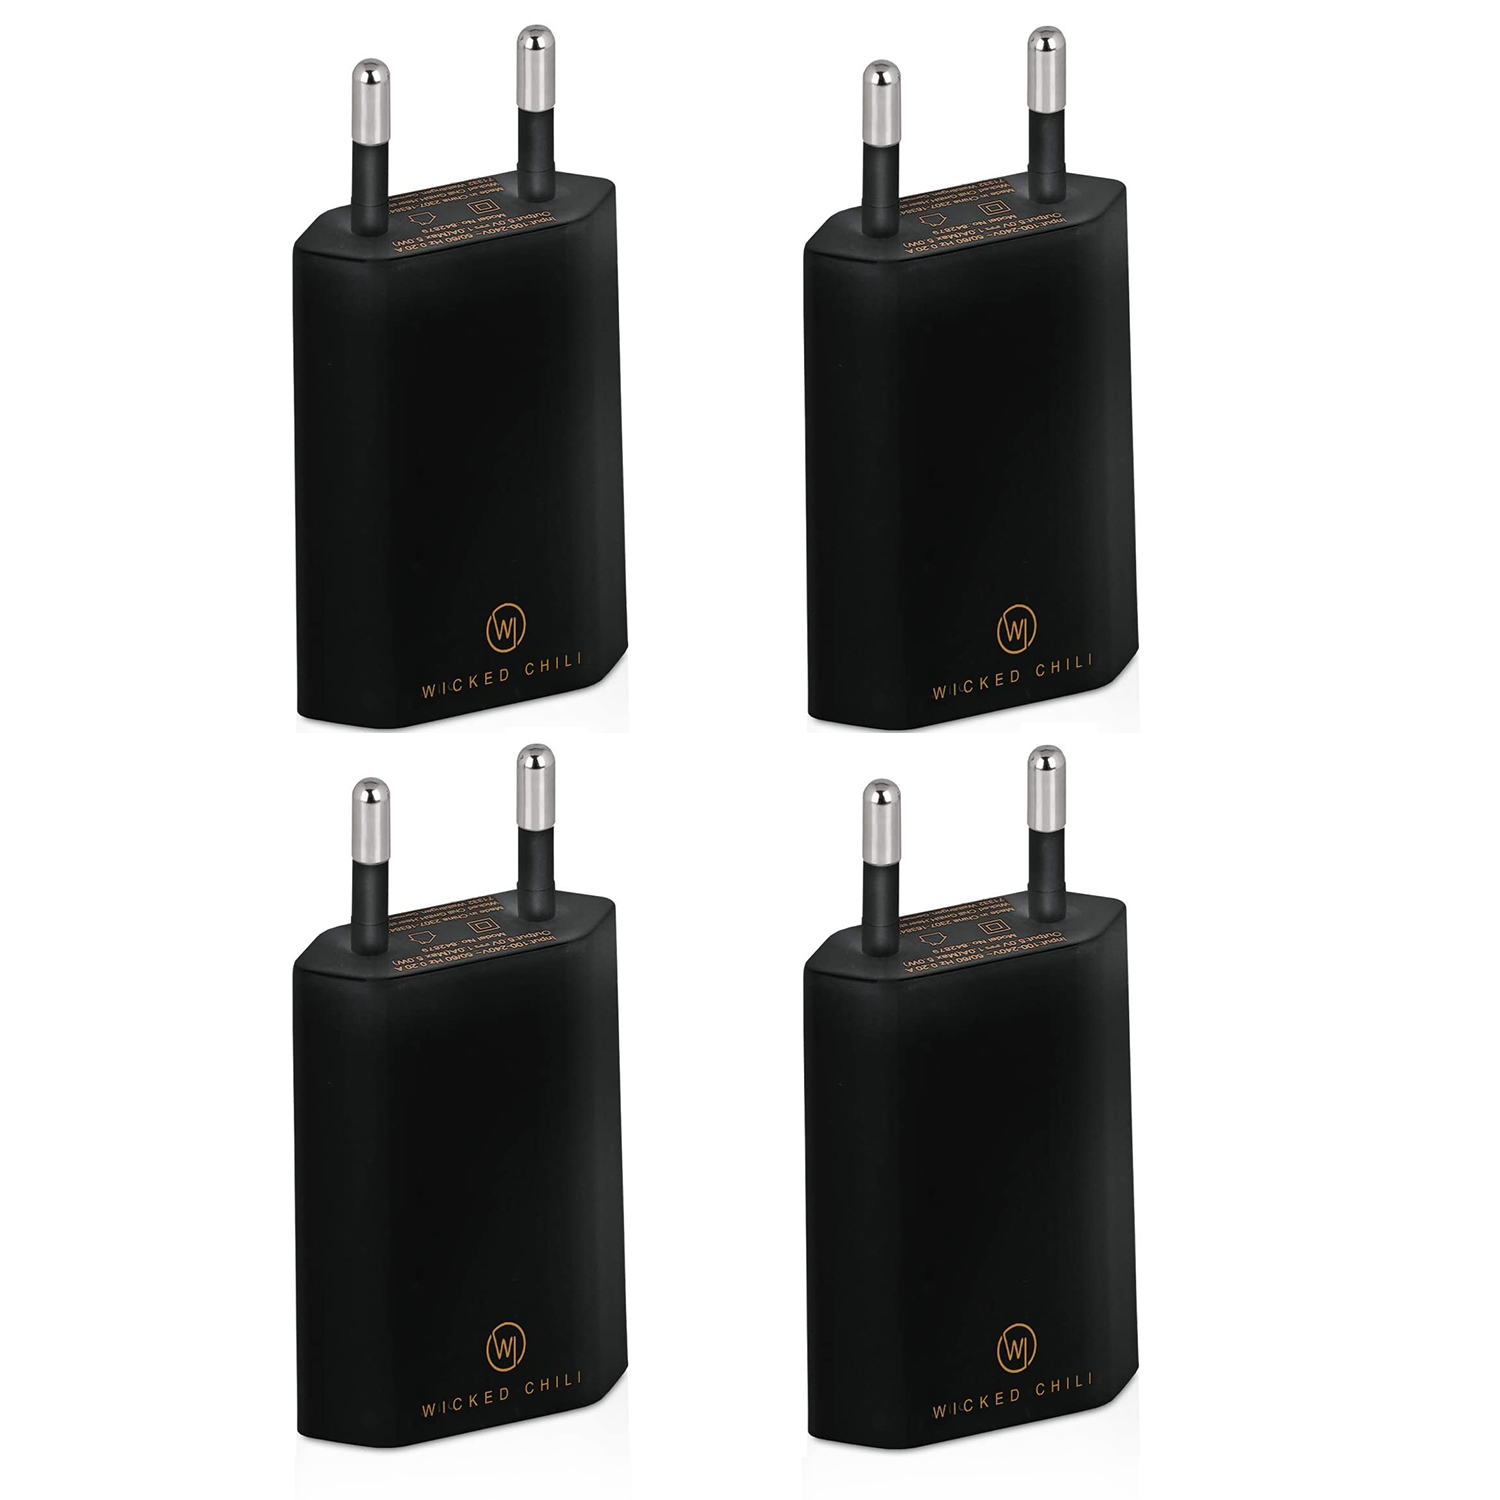 Samsung Smartphone Netzteil CHILI und USB 5V) für WICKED Adapter 1A, iPhone, USB Galaxy, Ladegerät Handy 4x schwarz Stecker